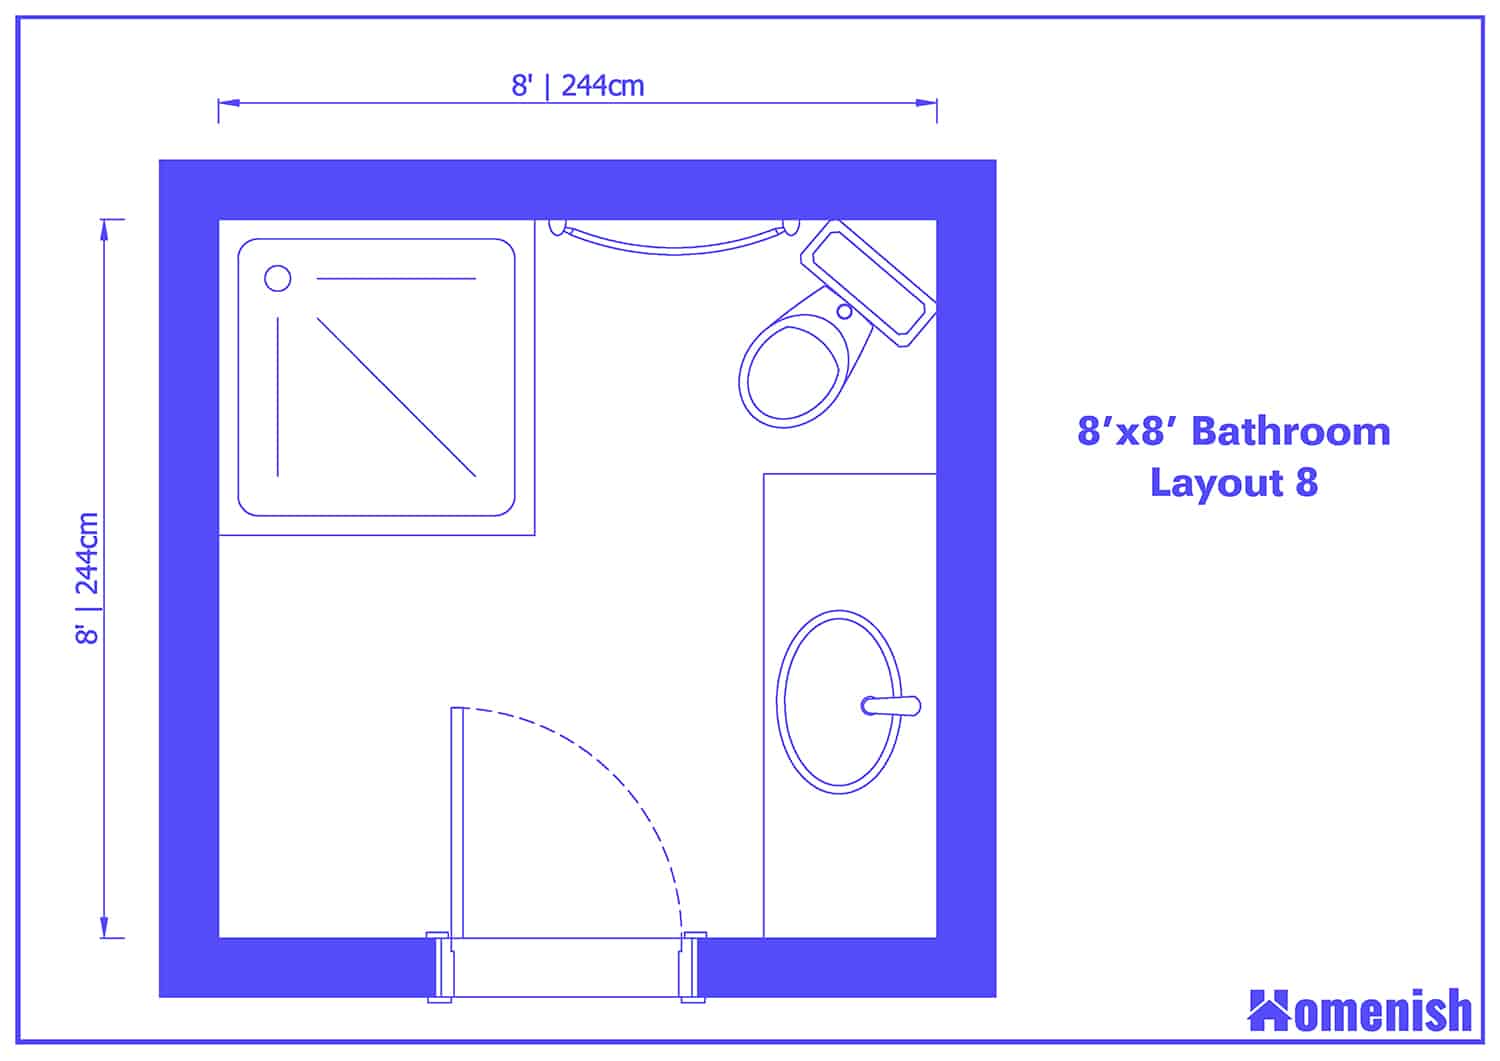 8' x 8' Bathroom Layout 8